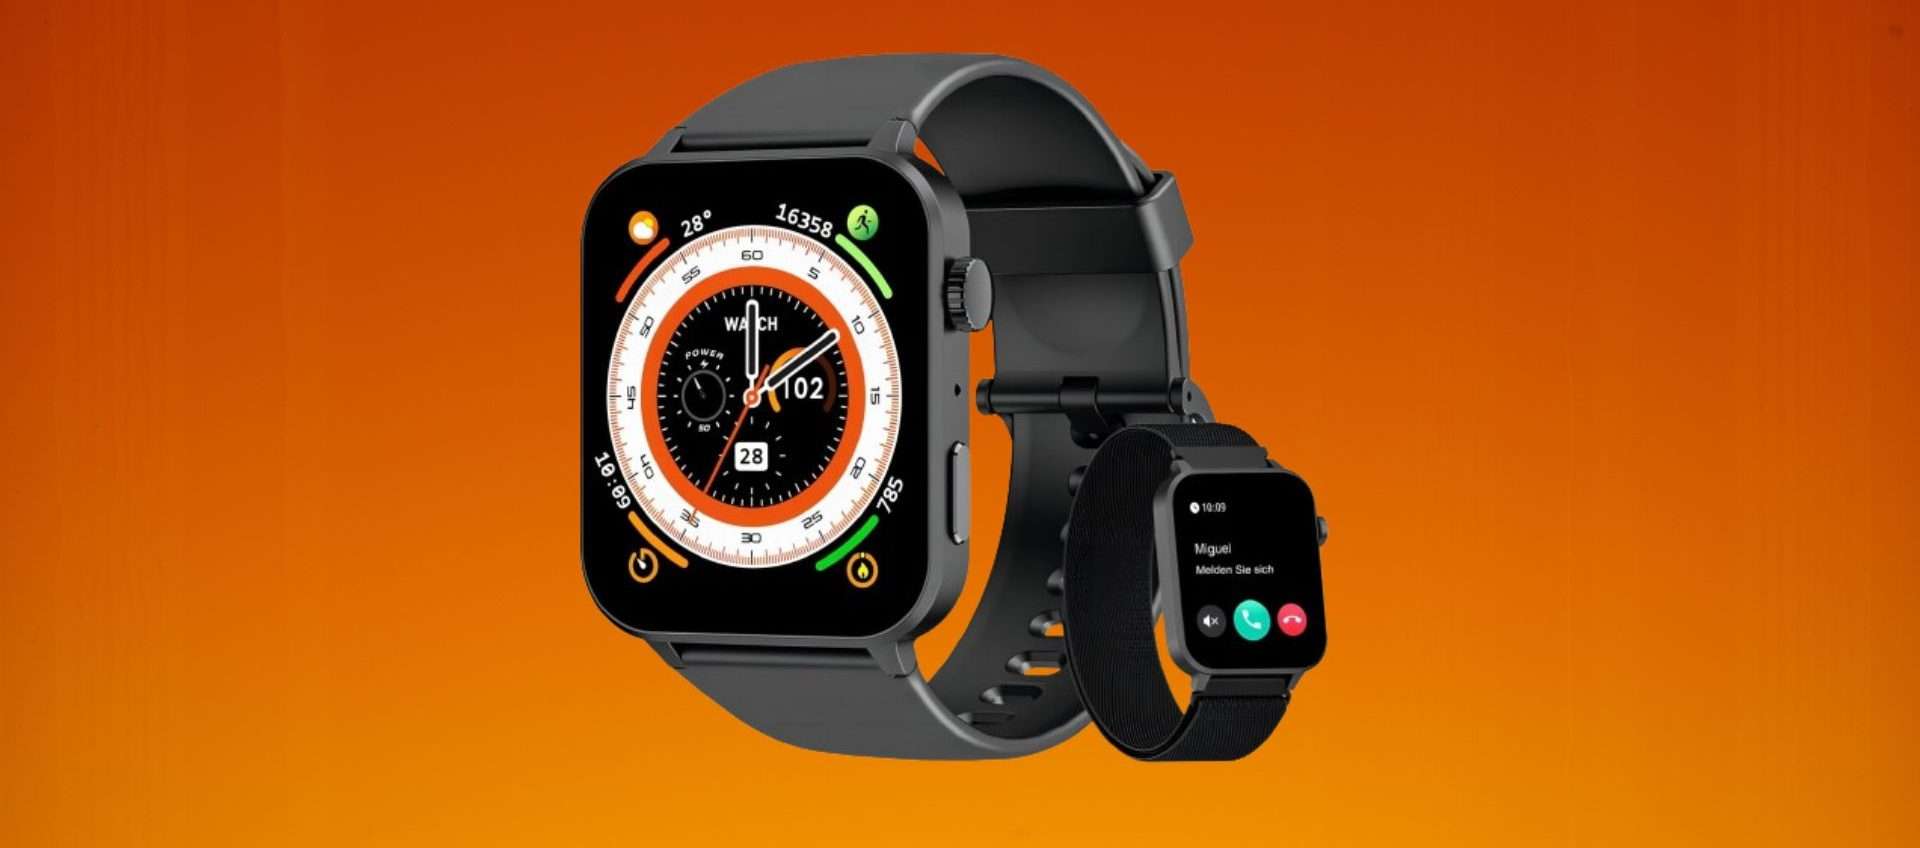 Smartwatch in offertissima: su Amazon il prezzo crolla a soli 26€